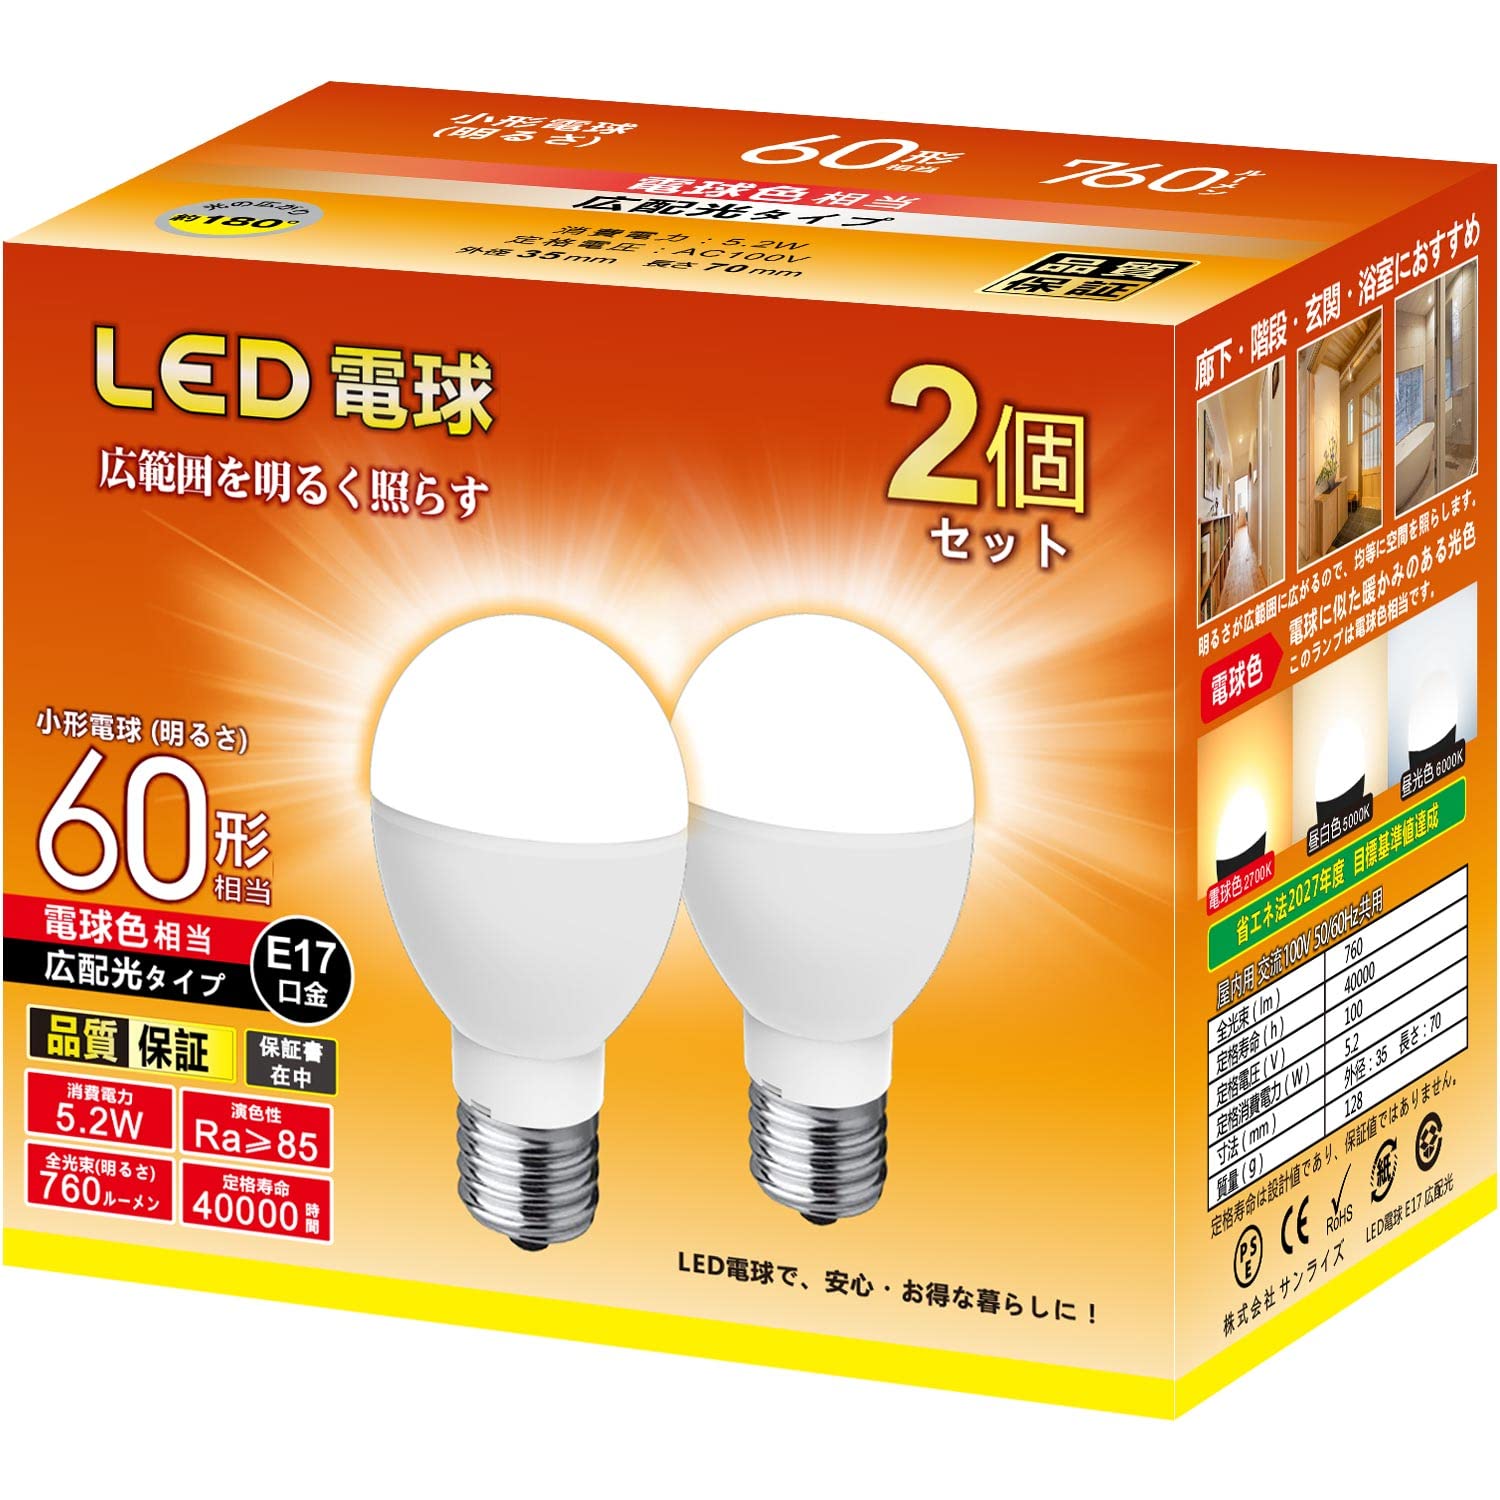 ミニクリプトン型 LED電球 E17口金 60W形相当 760lm 電球色 (5.2W) 小形電球 「ネック部: スリムタイプ」・ 高輝度 広配光タ